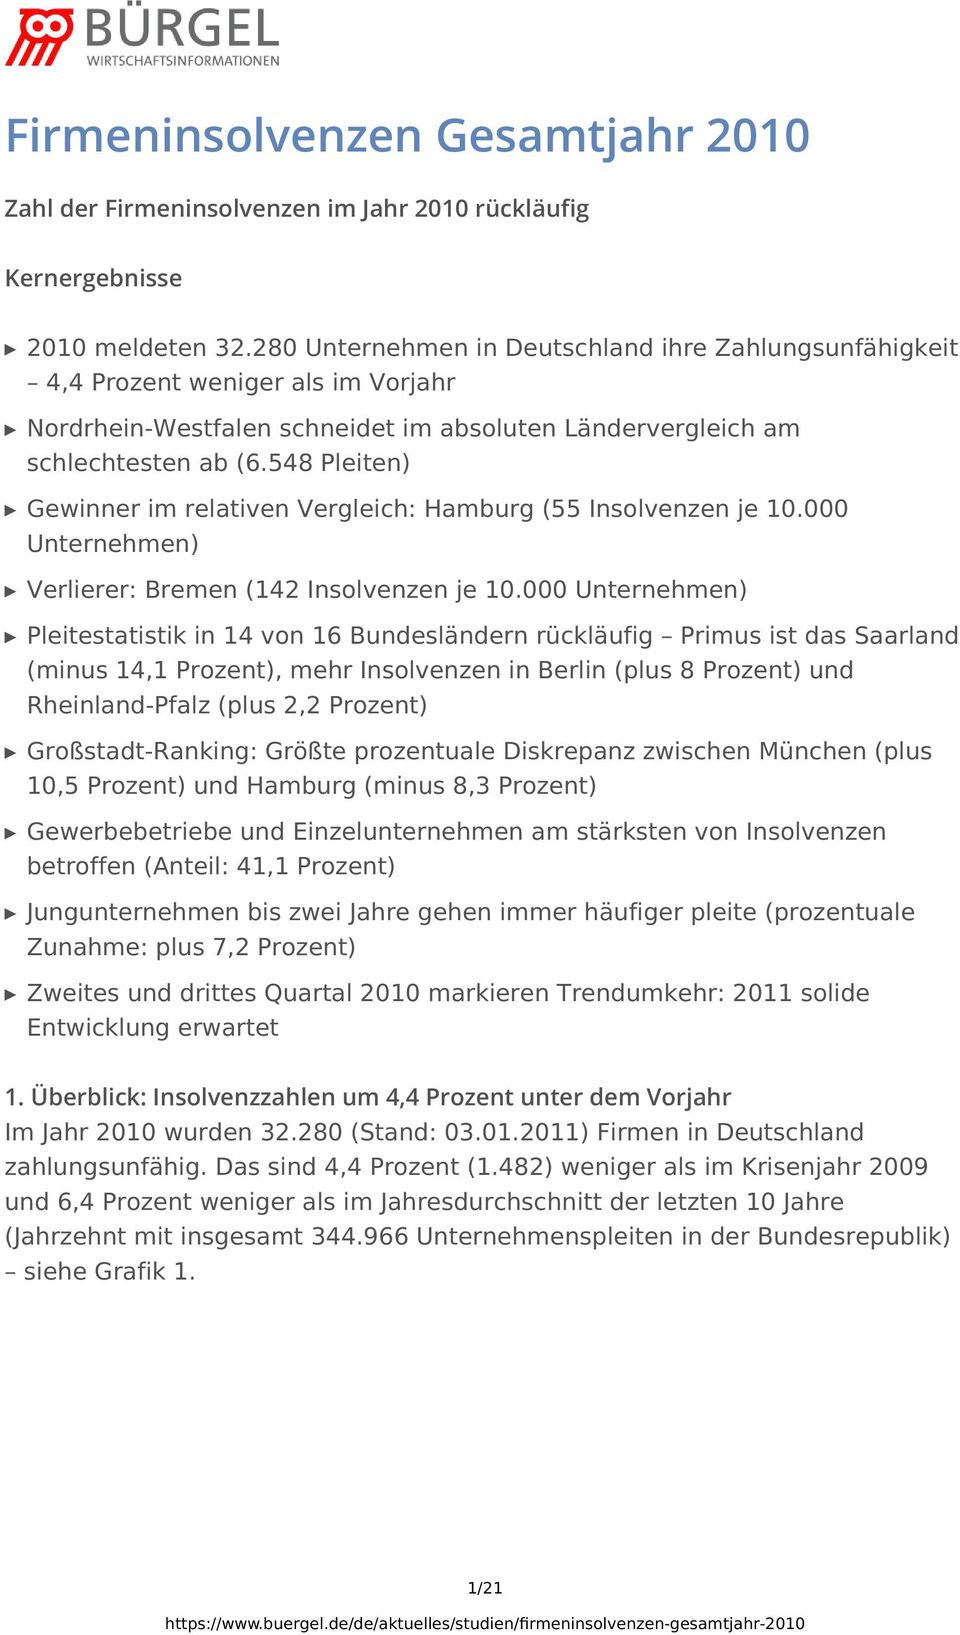 548 Pleiten) Gewinner im relativen Vergleich: Hamburg (55 Insolvenzen je 10.000 Unternehmen) Verlierer: Bremen (142 Insolvenzen je 10.